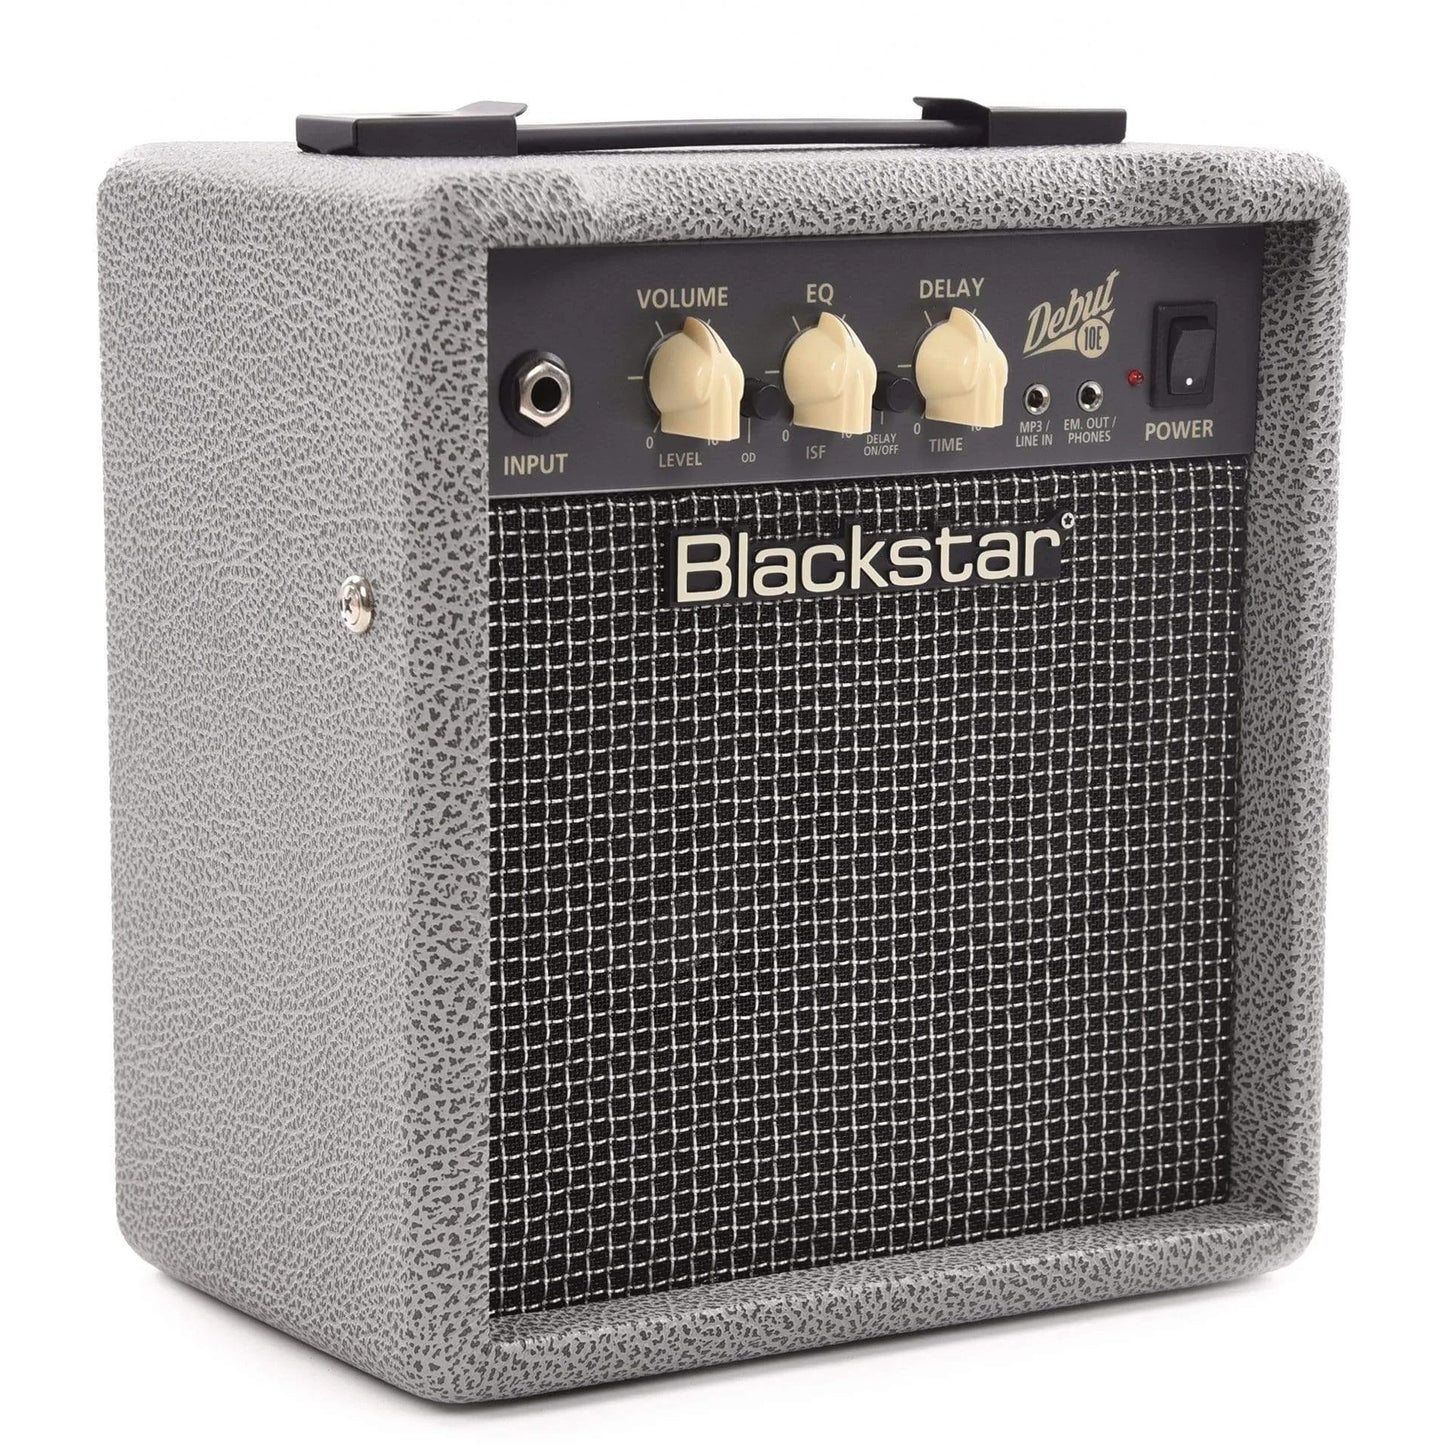 Blackstar Limited Edition Debut Series 10 Watt Amplifier in Bronco Grey